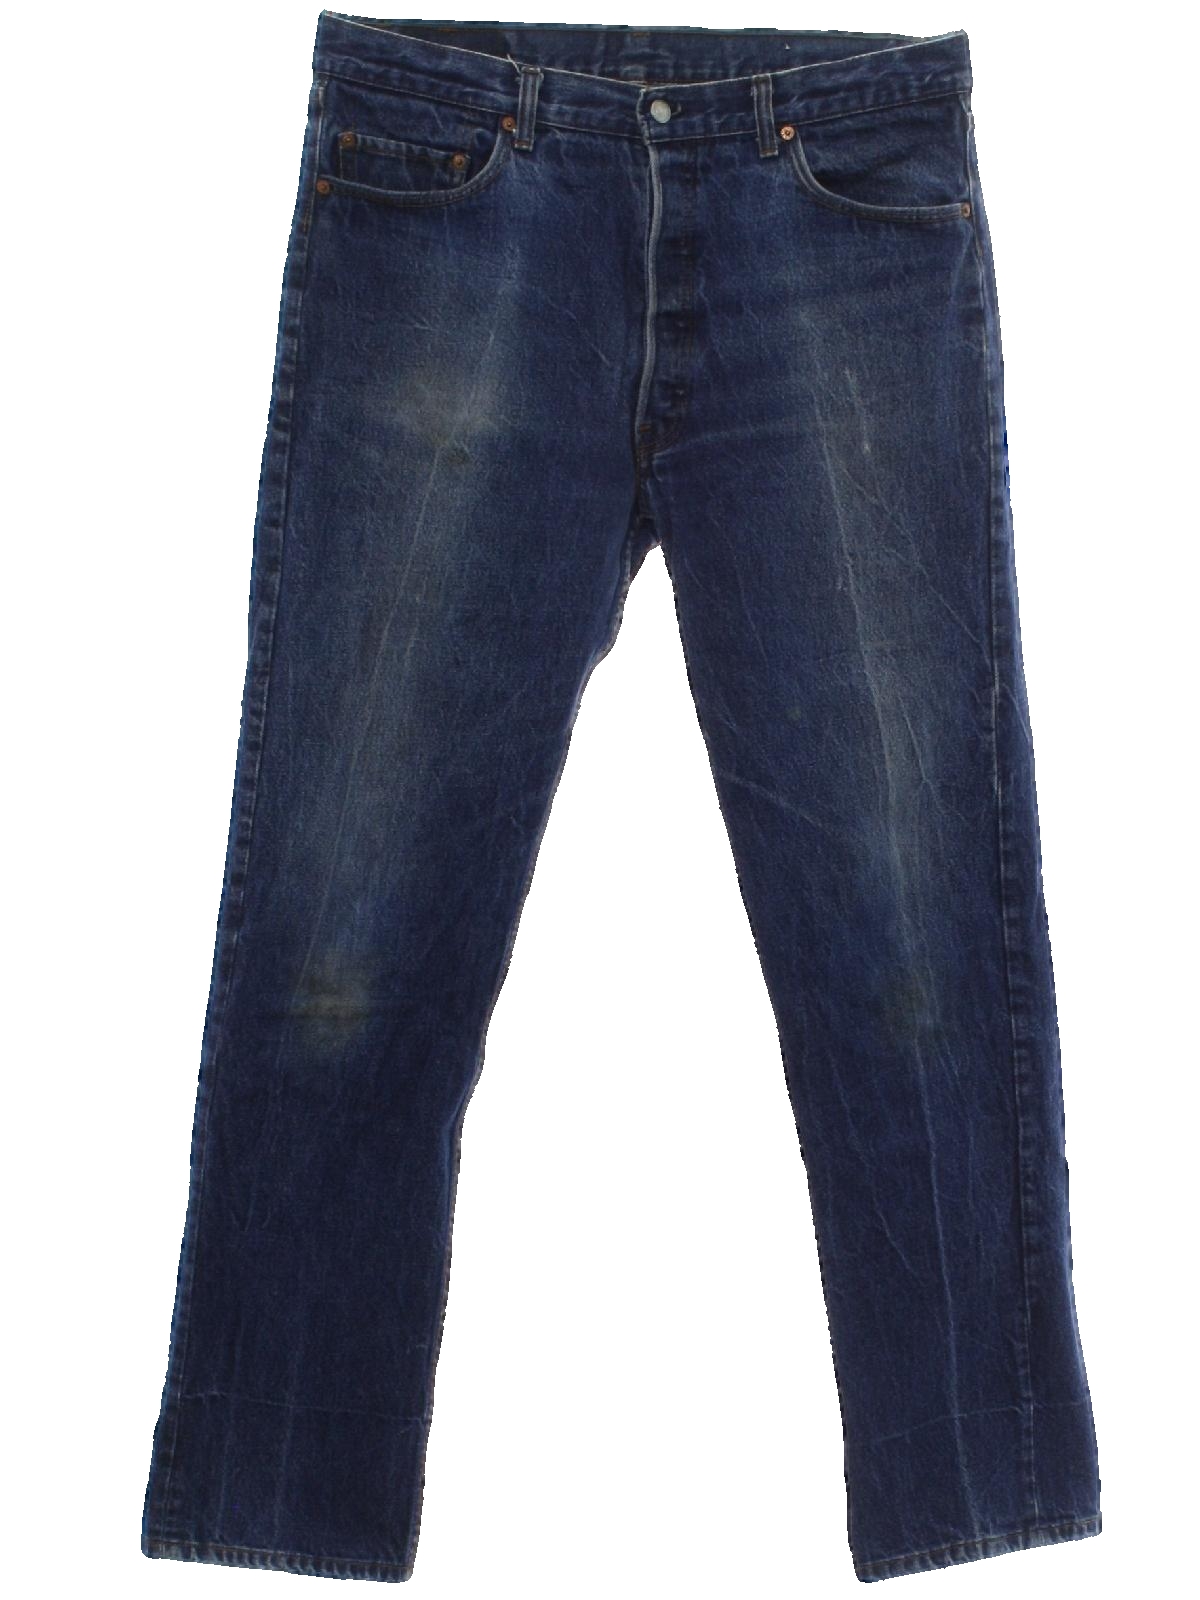 Retro 1980s Pants: 80s -Levis- Mens faded blue cotton denim jeans with ...